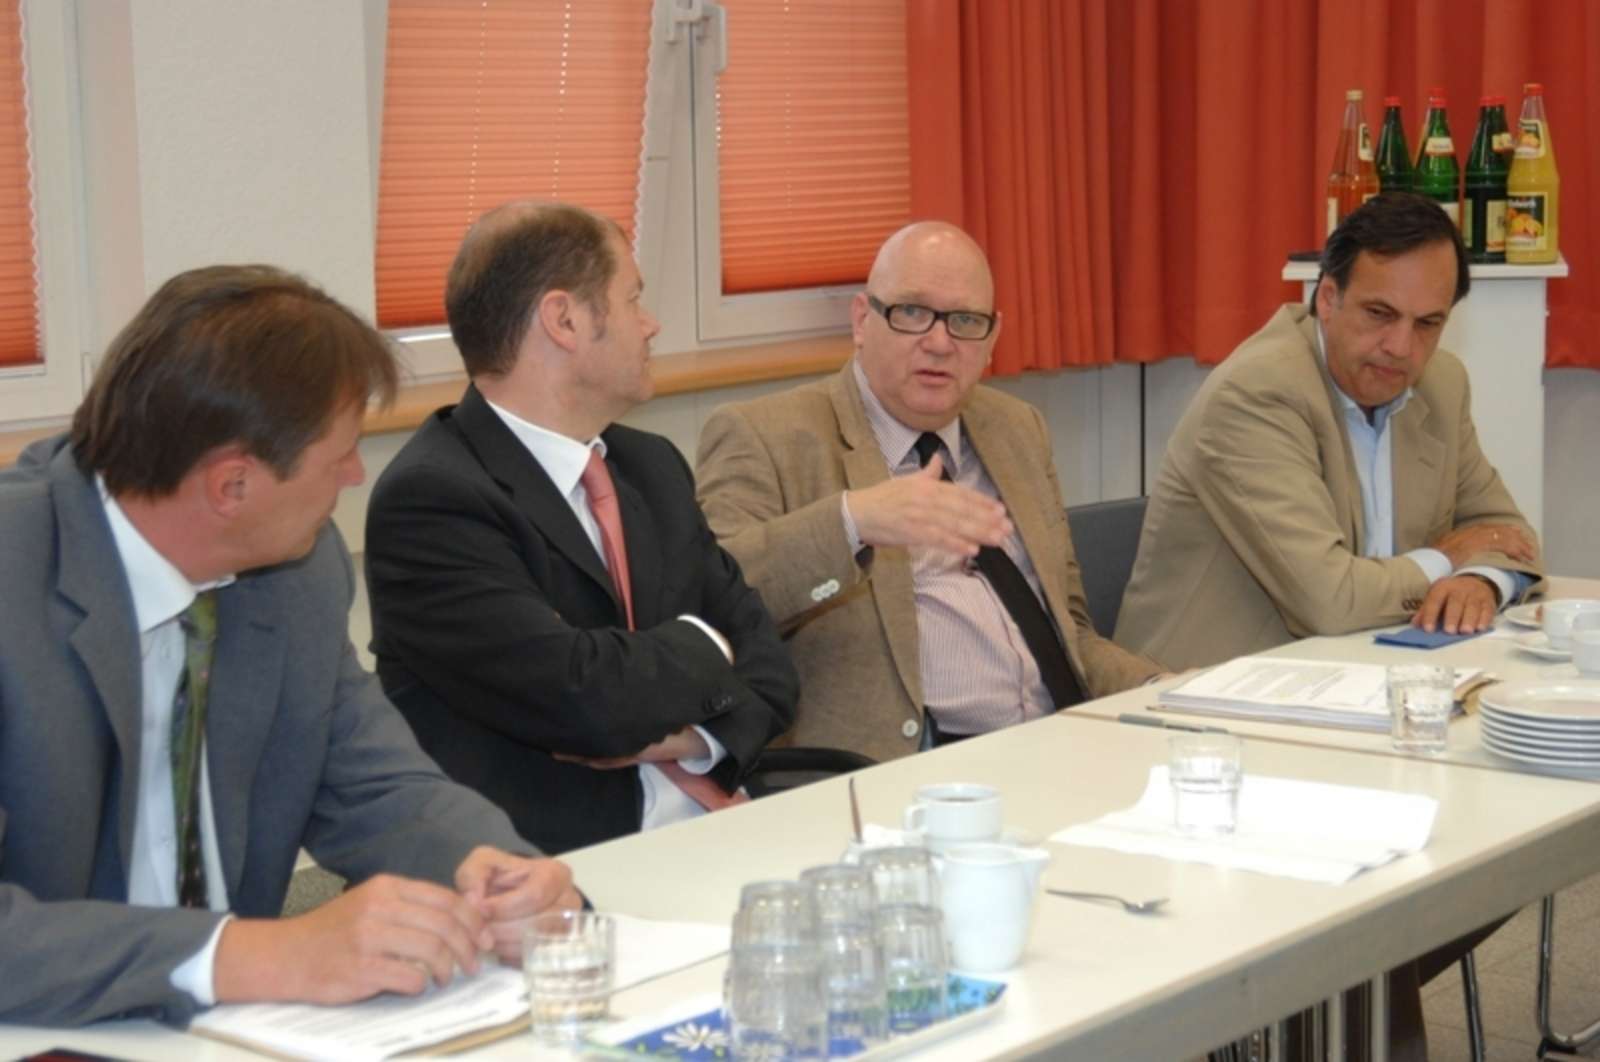 v.l.n.r.: Stefan Rehm (Diakonisches Werk), Bundesarbeitsminister Olaf Scholz, Wolfgang Rose (Ver.di), Knut Fleckenstein (ASB)